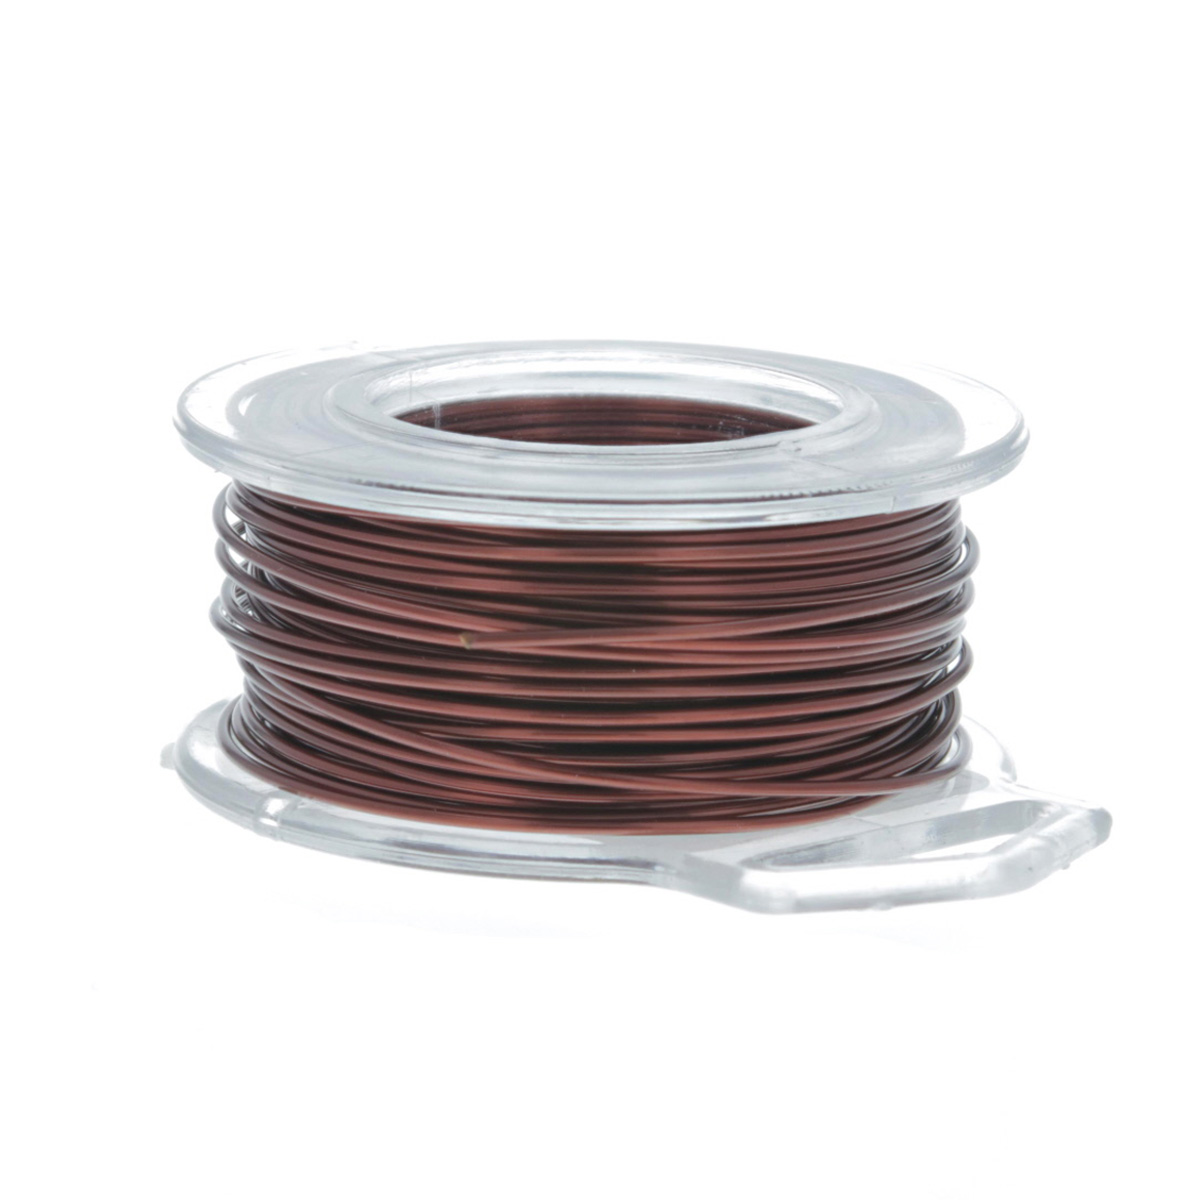 24 Gauge Round Brown Enameled Craft Wire - 60 ft: Wire Jewelry, Wire Wrap  Tutorials